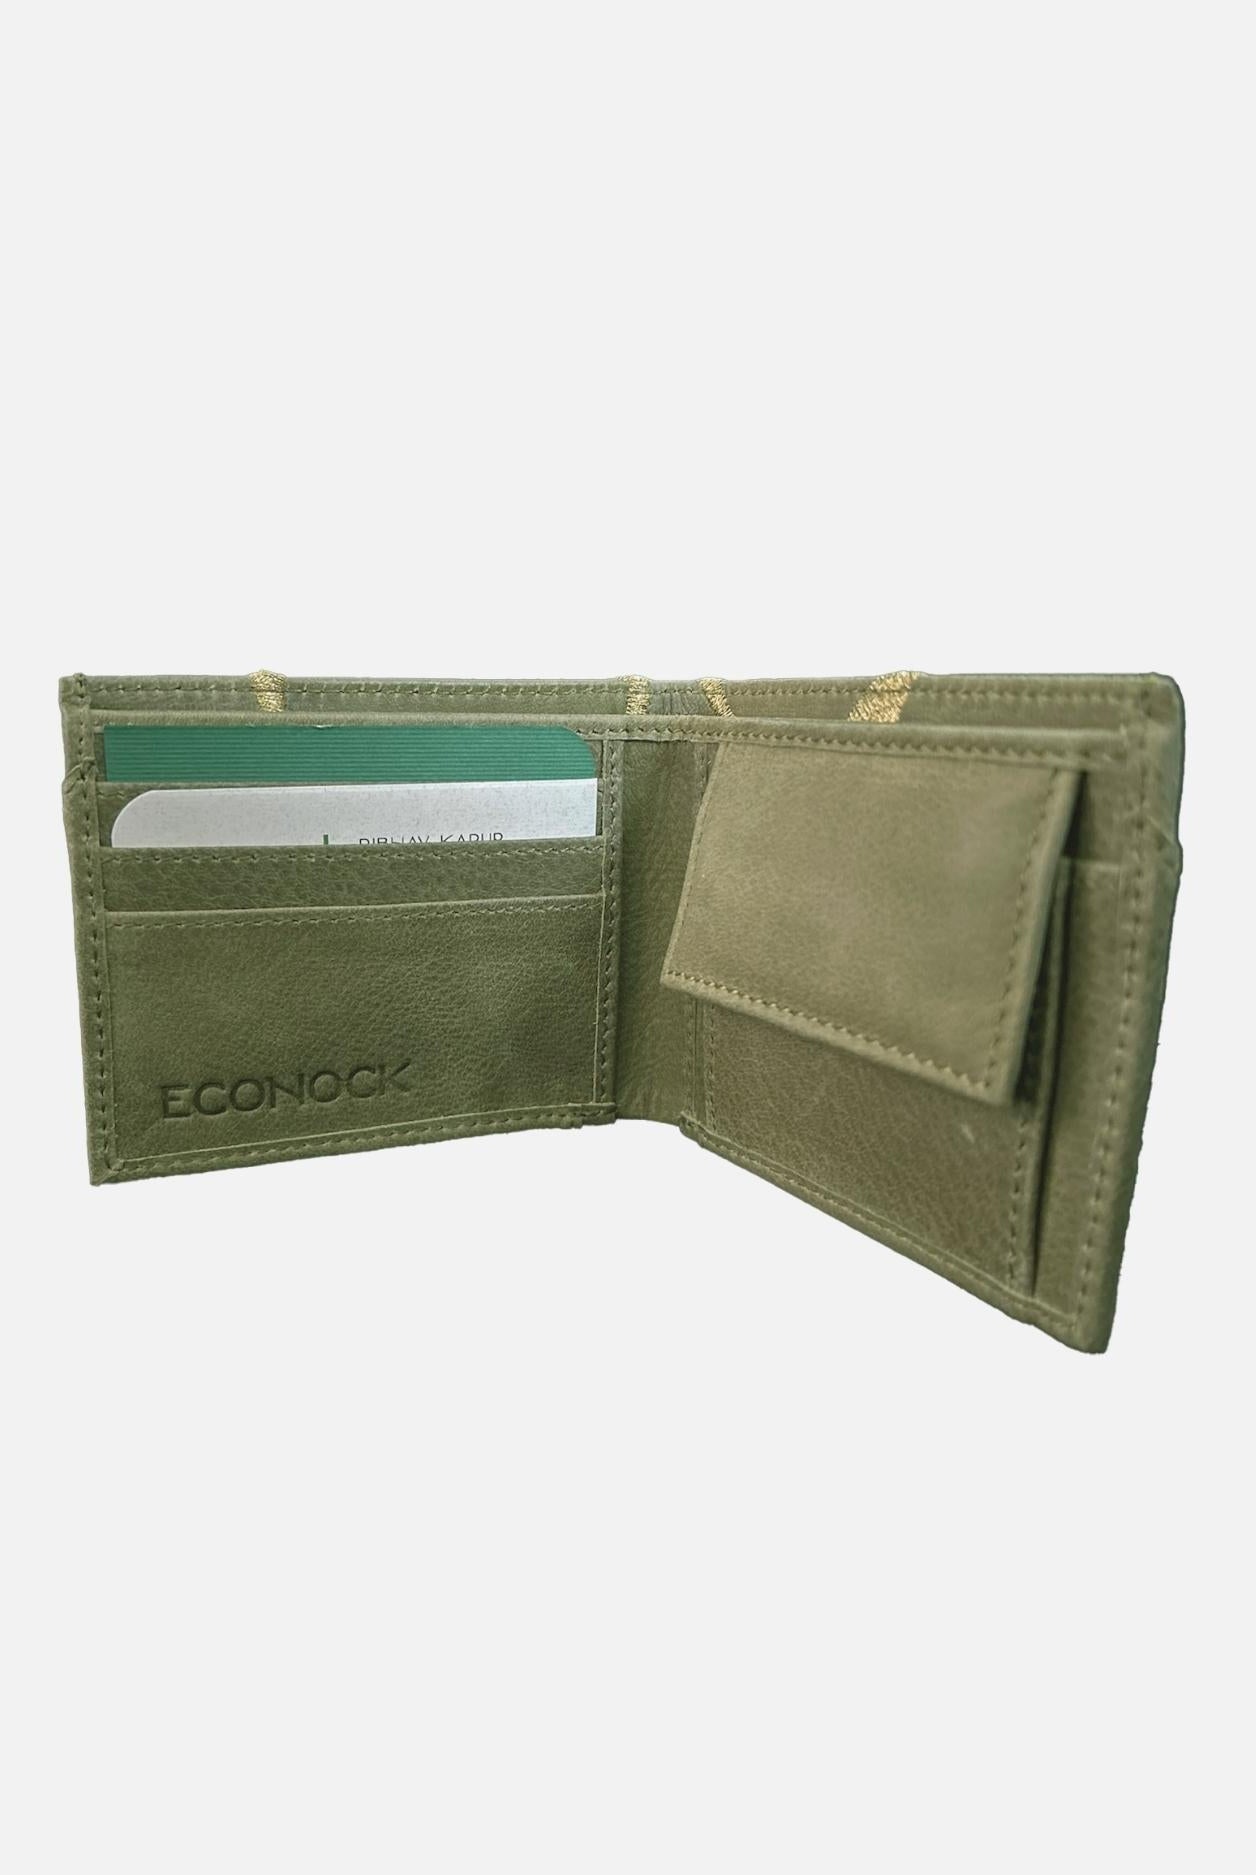 EcoFold Wallet - Green - CiceroniWalletEconock